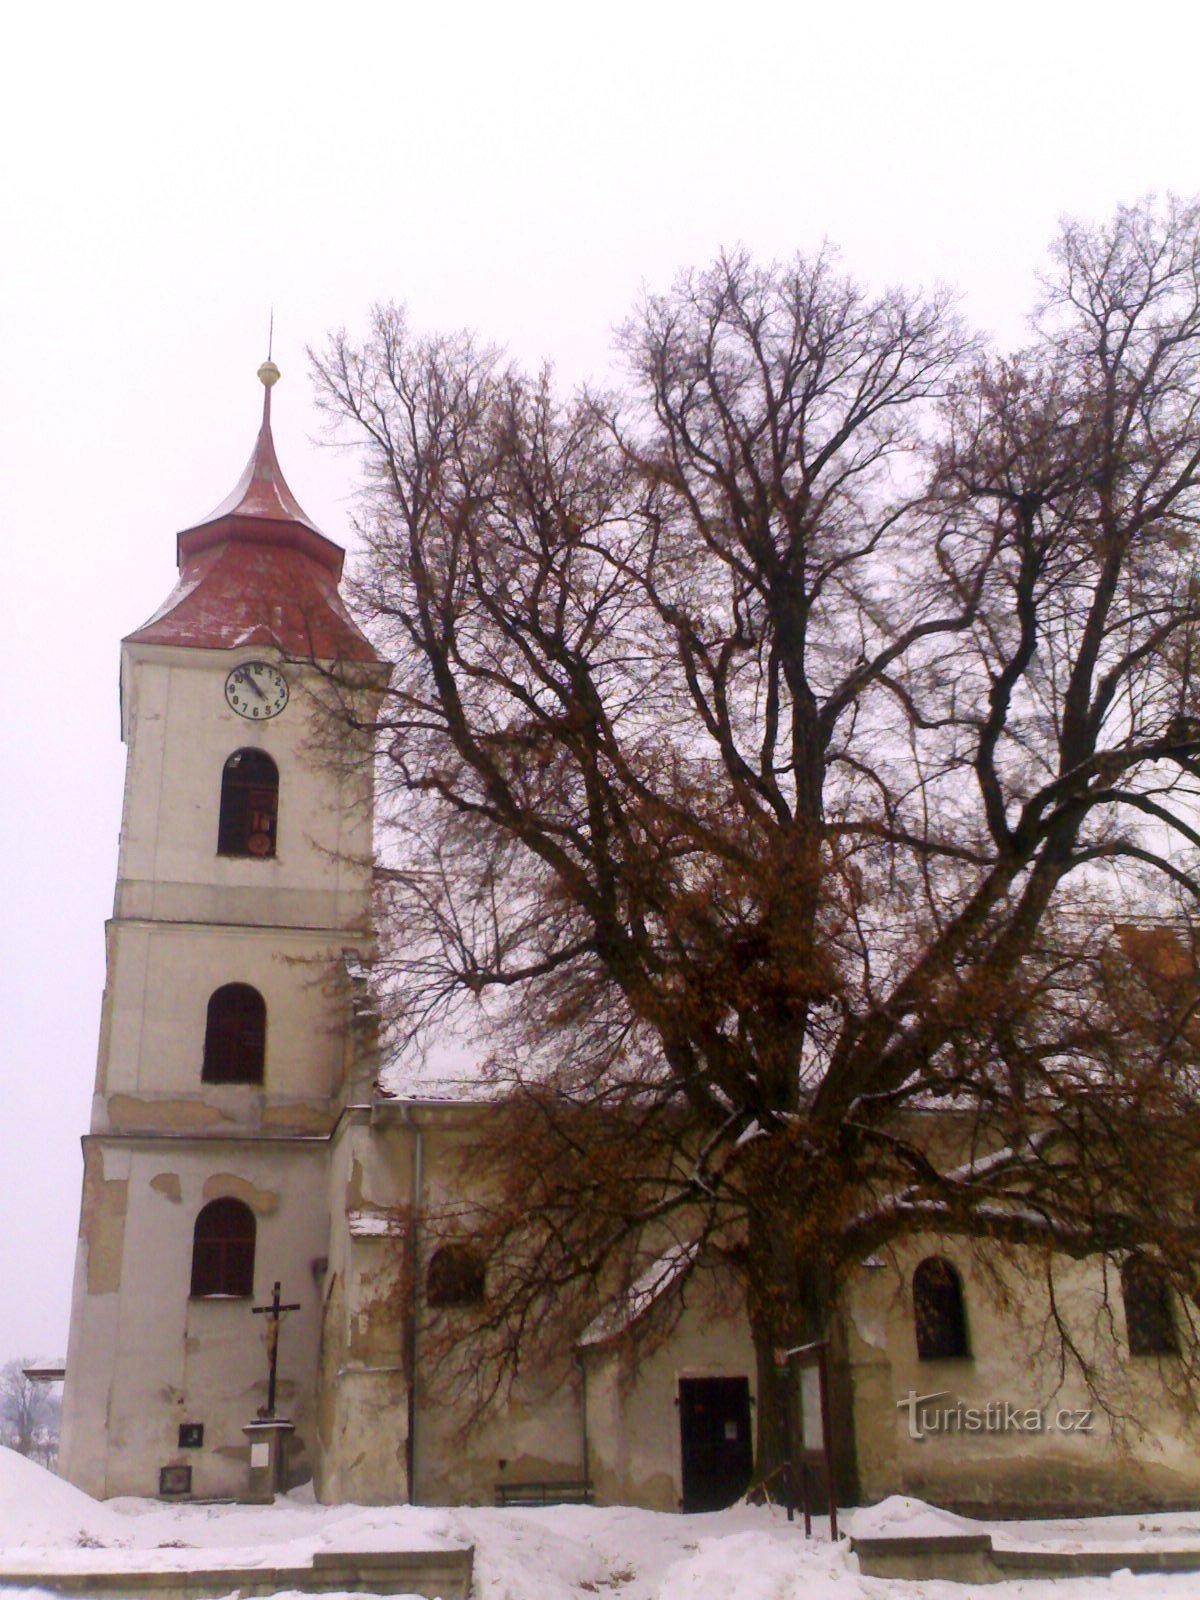 Žiželice - Szent Prokop templom